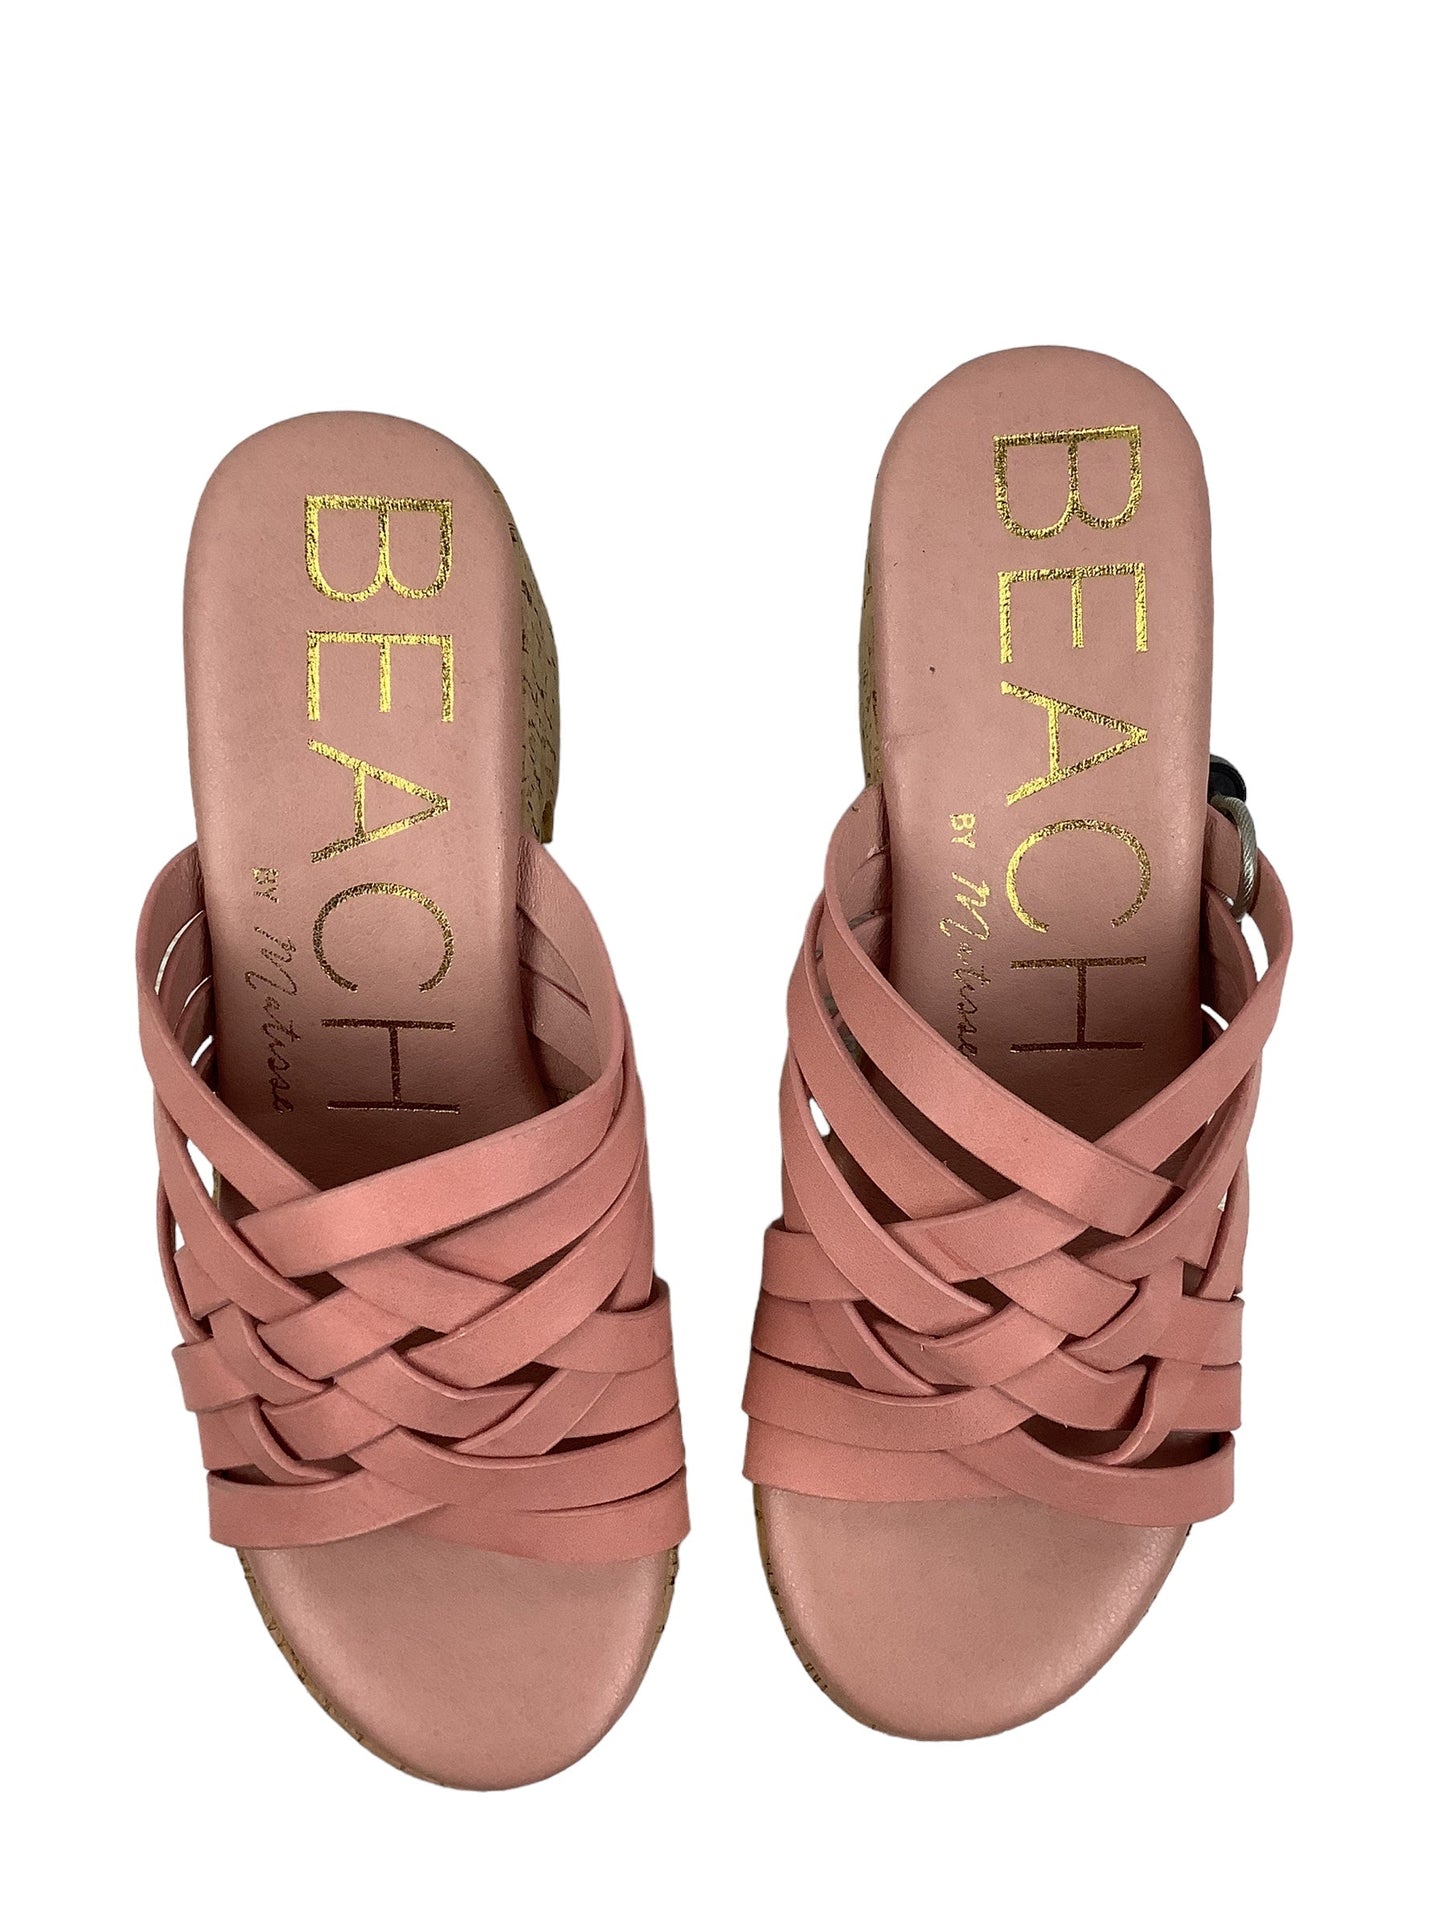 Pink Shoes Heels Block Matisse, Size 7